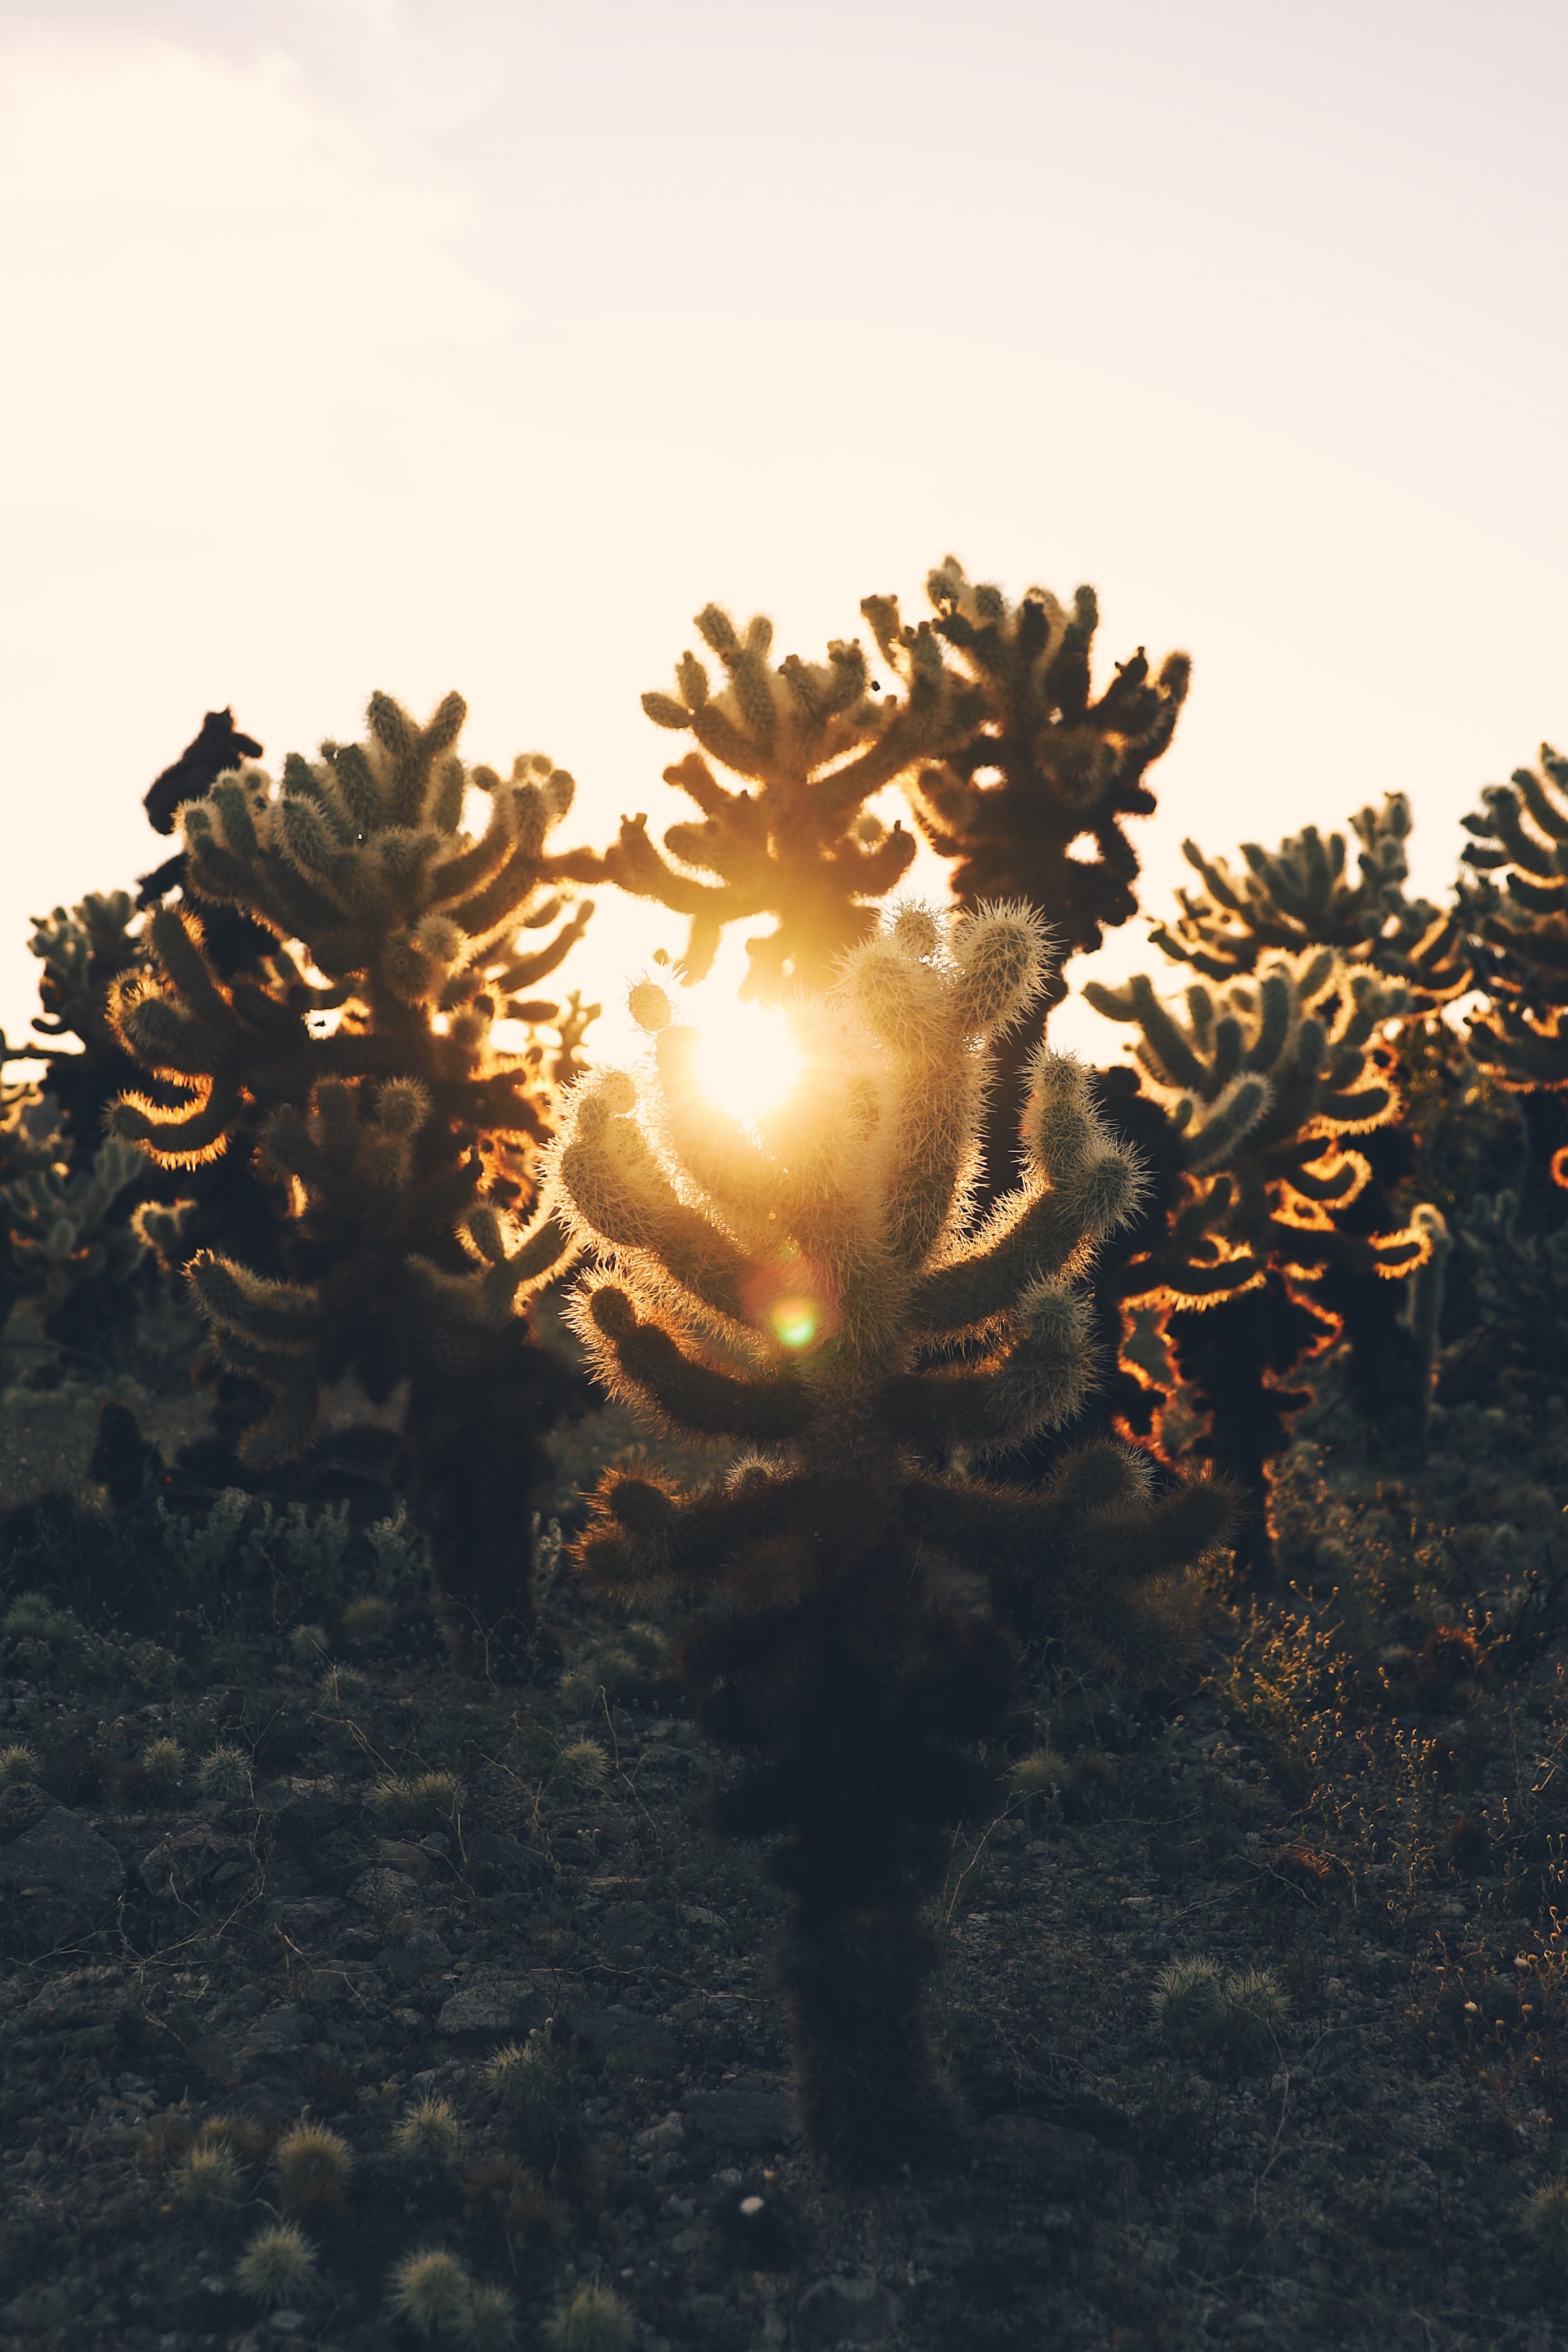 nature, cactuses, sunset, desert, sunlight FHD, 4K, UHD